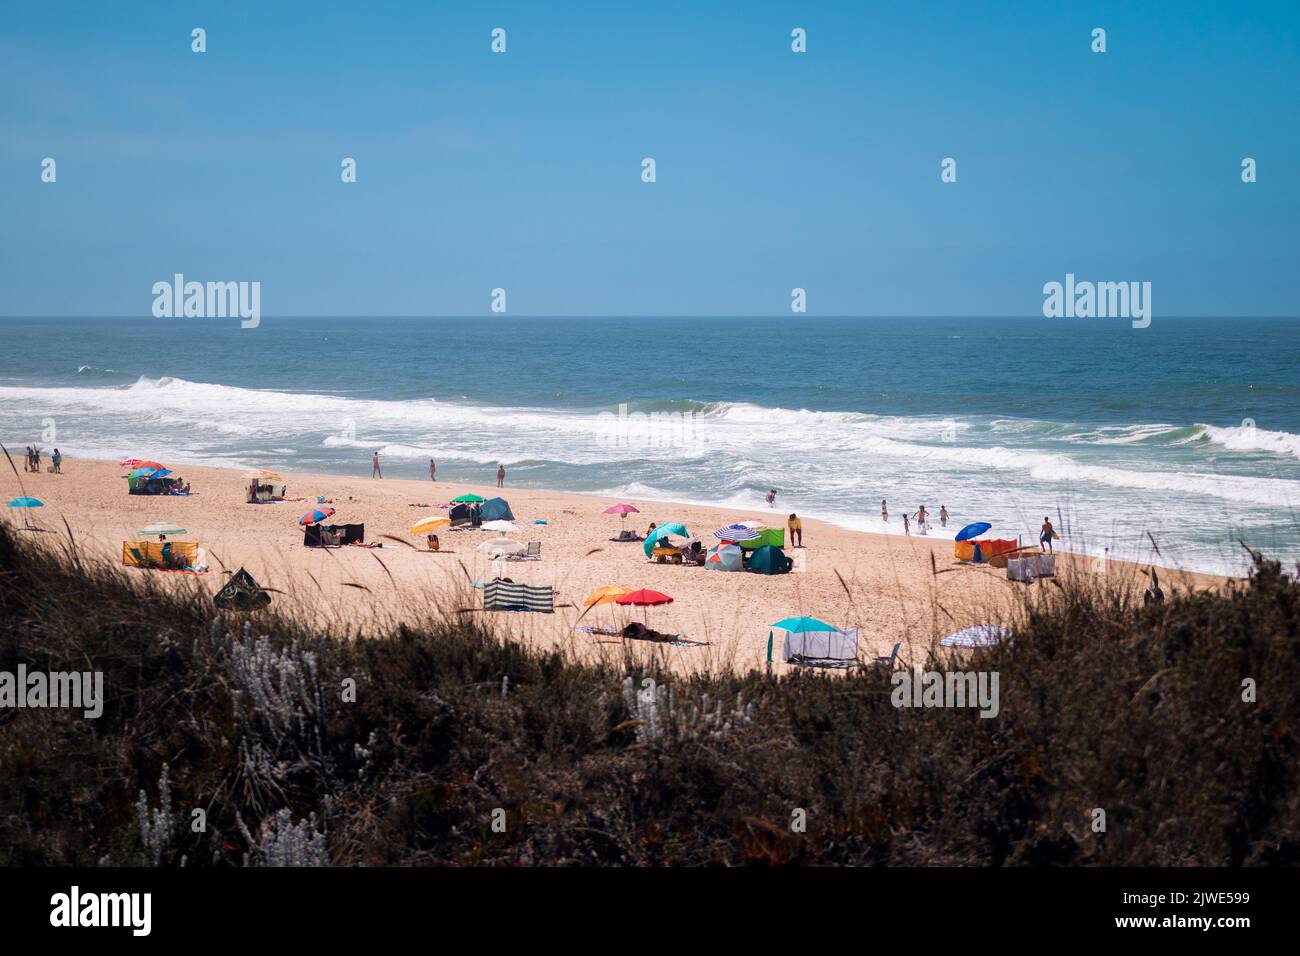 Spiaggia di Quiaios nascosta dietro le dune erbose con ombrelloni colorati, persone che si rilassano in riva all'oceano Atlantico e cielo blu. Vista frontale della costa Foto Stock